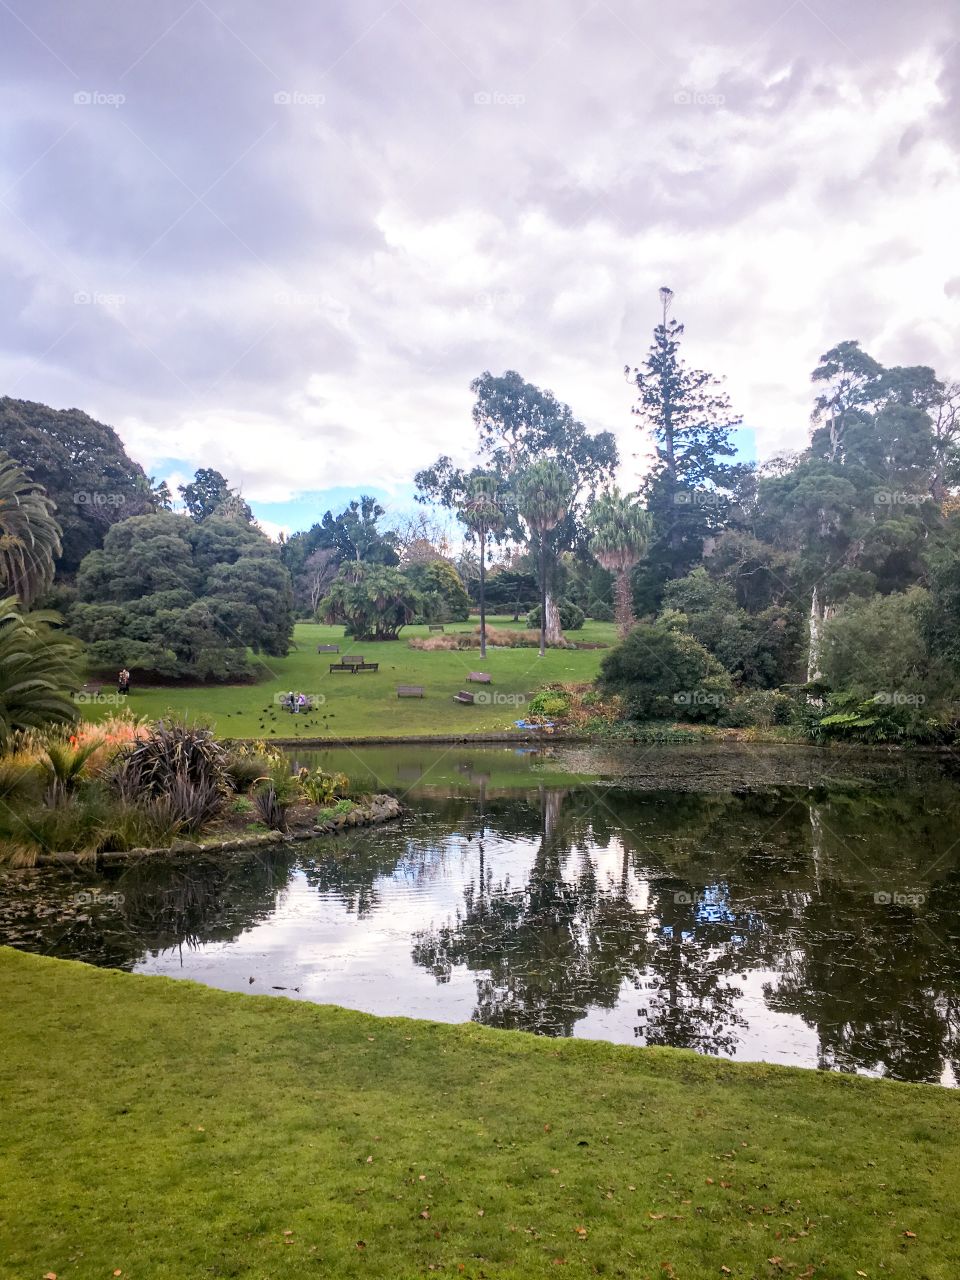 Lake in Royal Botanical Garden 